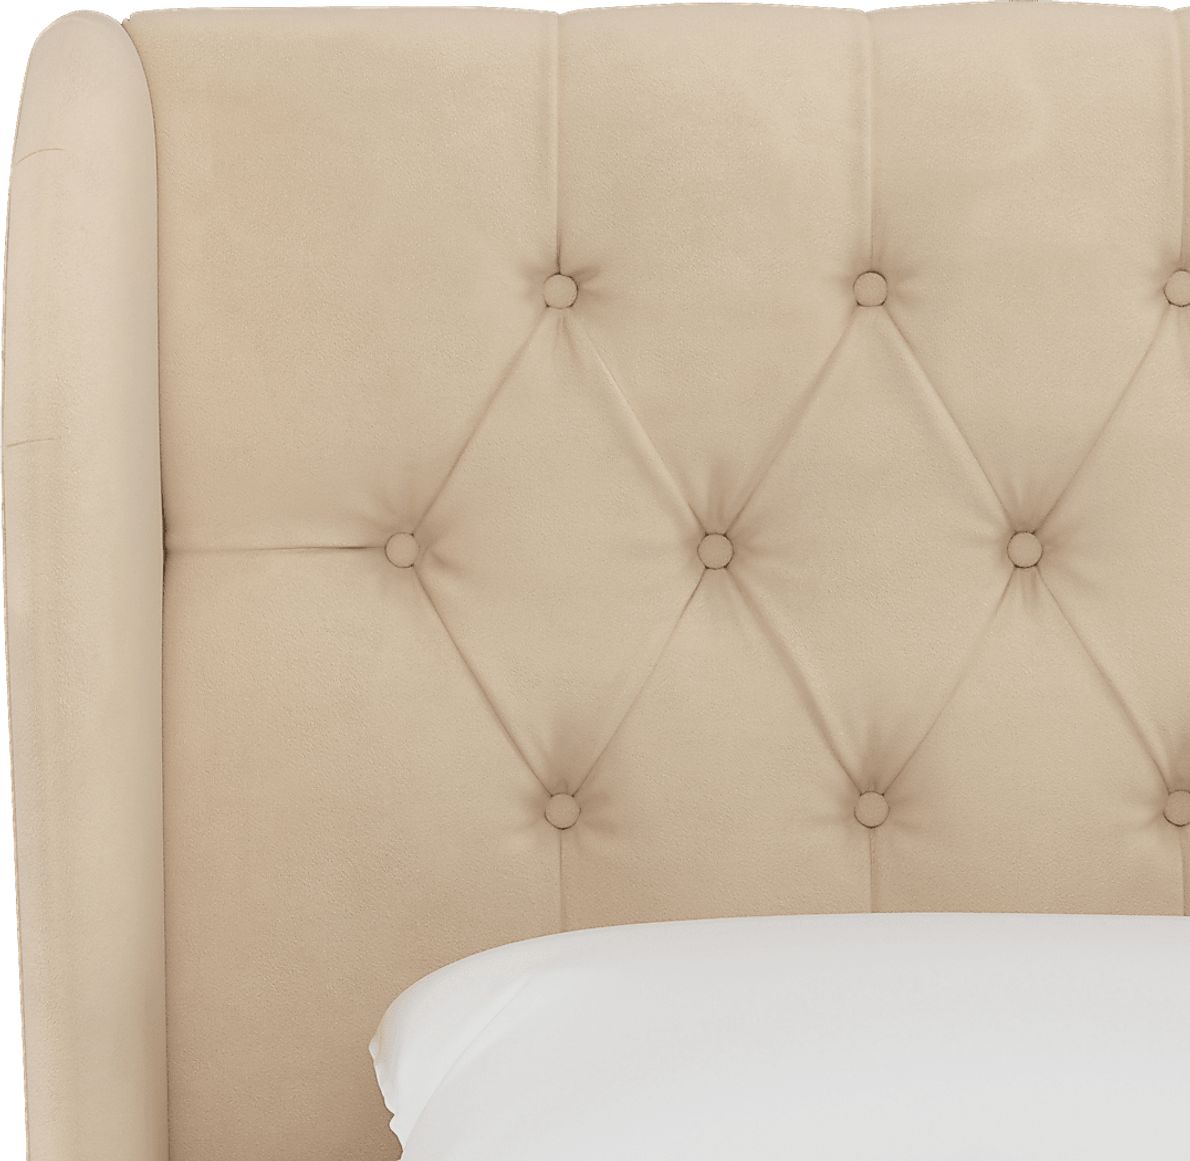 Sweet Comfort Linen Queen Upholstered Bed